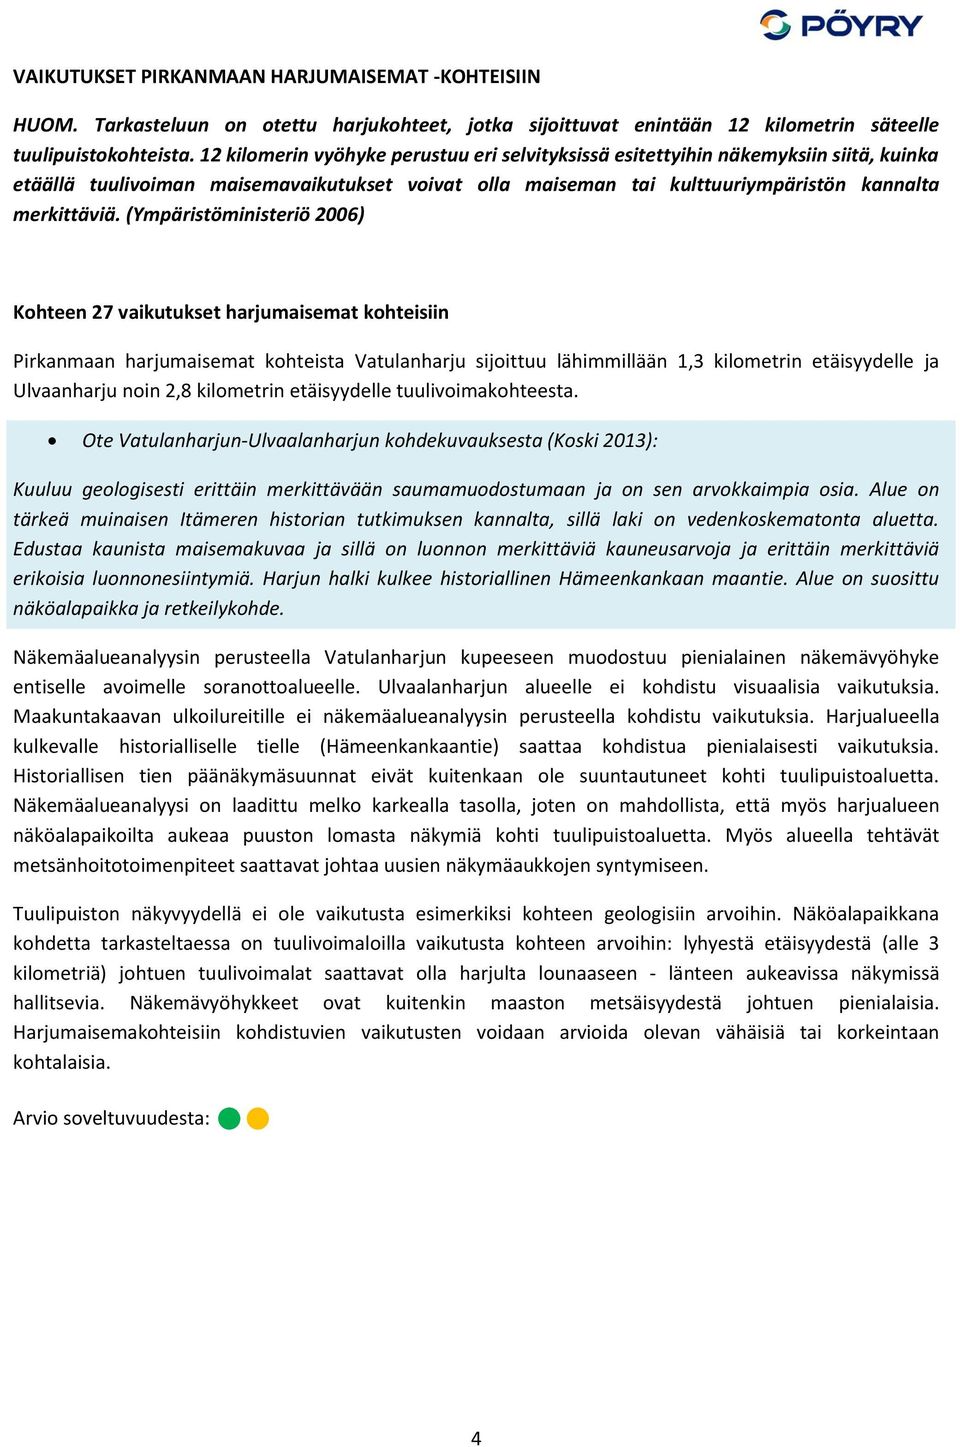 (Ympäristöministeriö 2006) Kohteen 27 vaikutukset harjumaisemat kohteisiin Pirkanmaan harjumaisemat kohteista Vatulanharju sijoittuu lähimmillään 1,3 kilometrin etäisyydelle ja Ulvaanharju noin 2,8